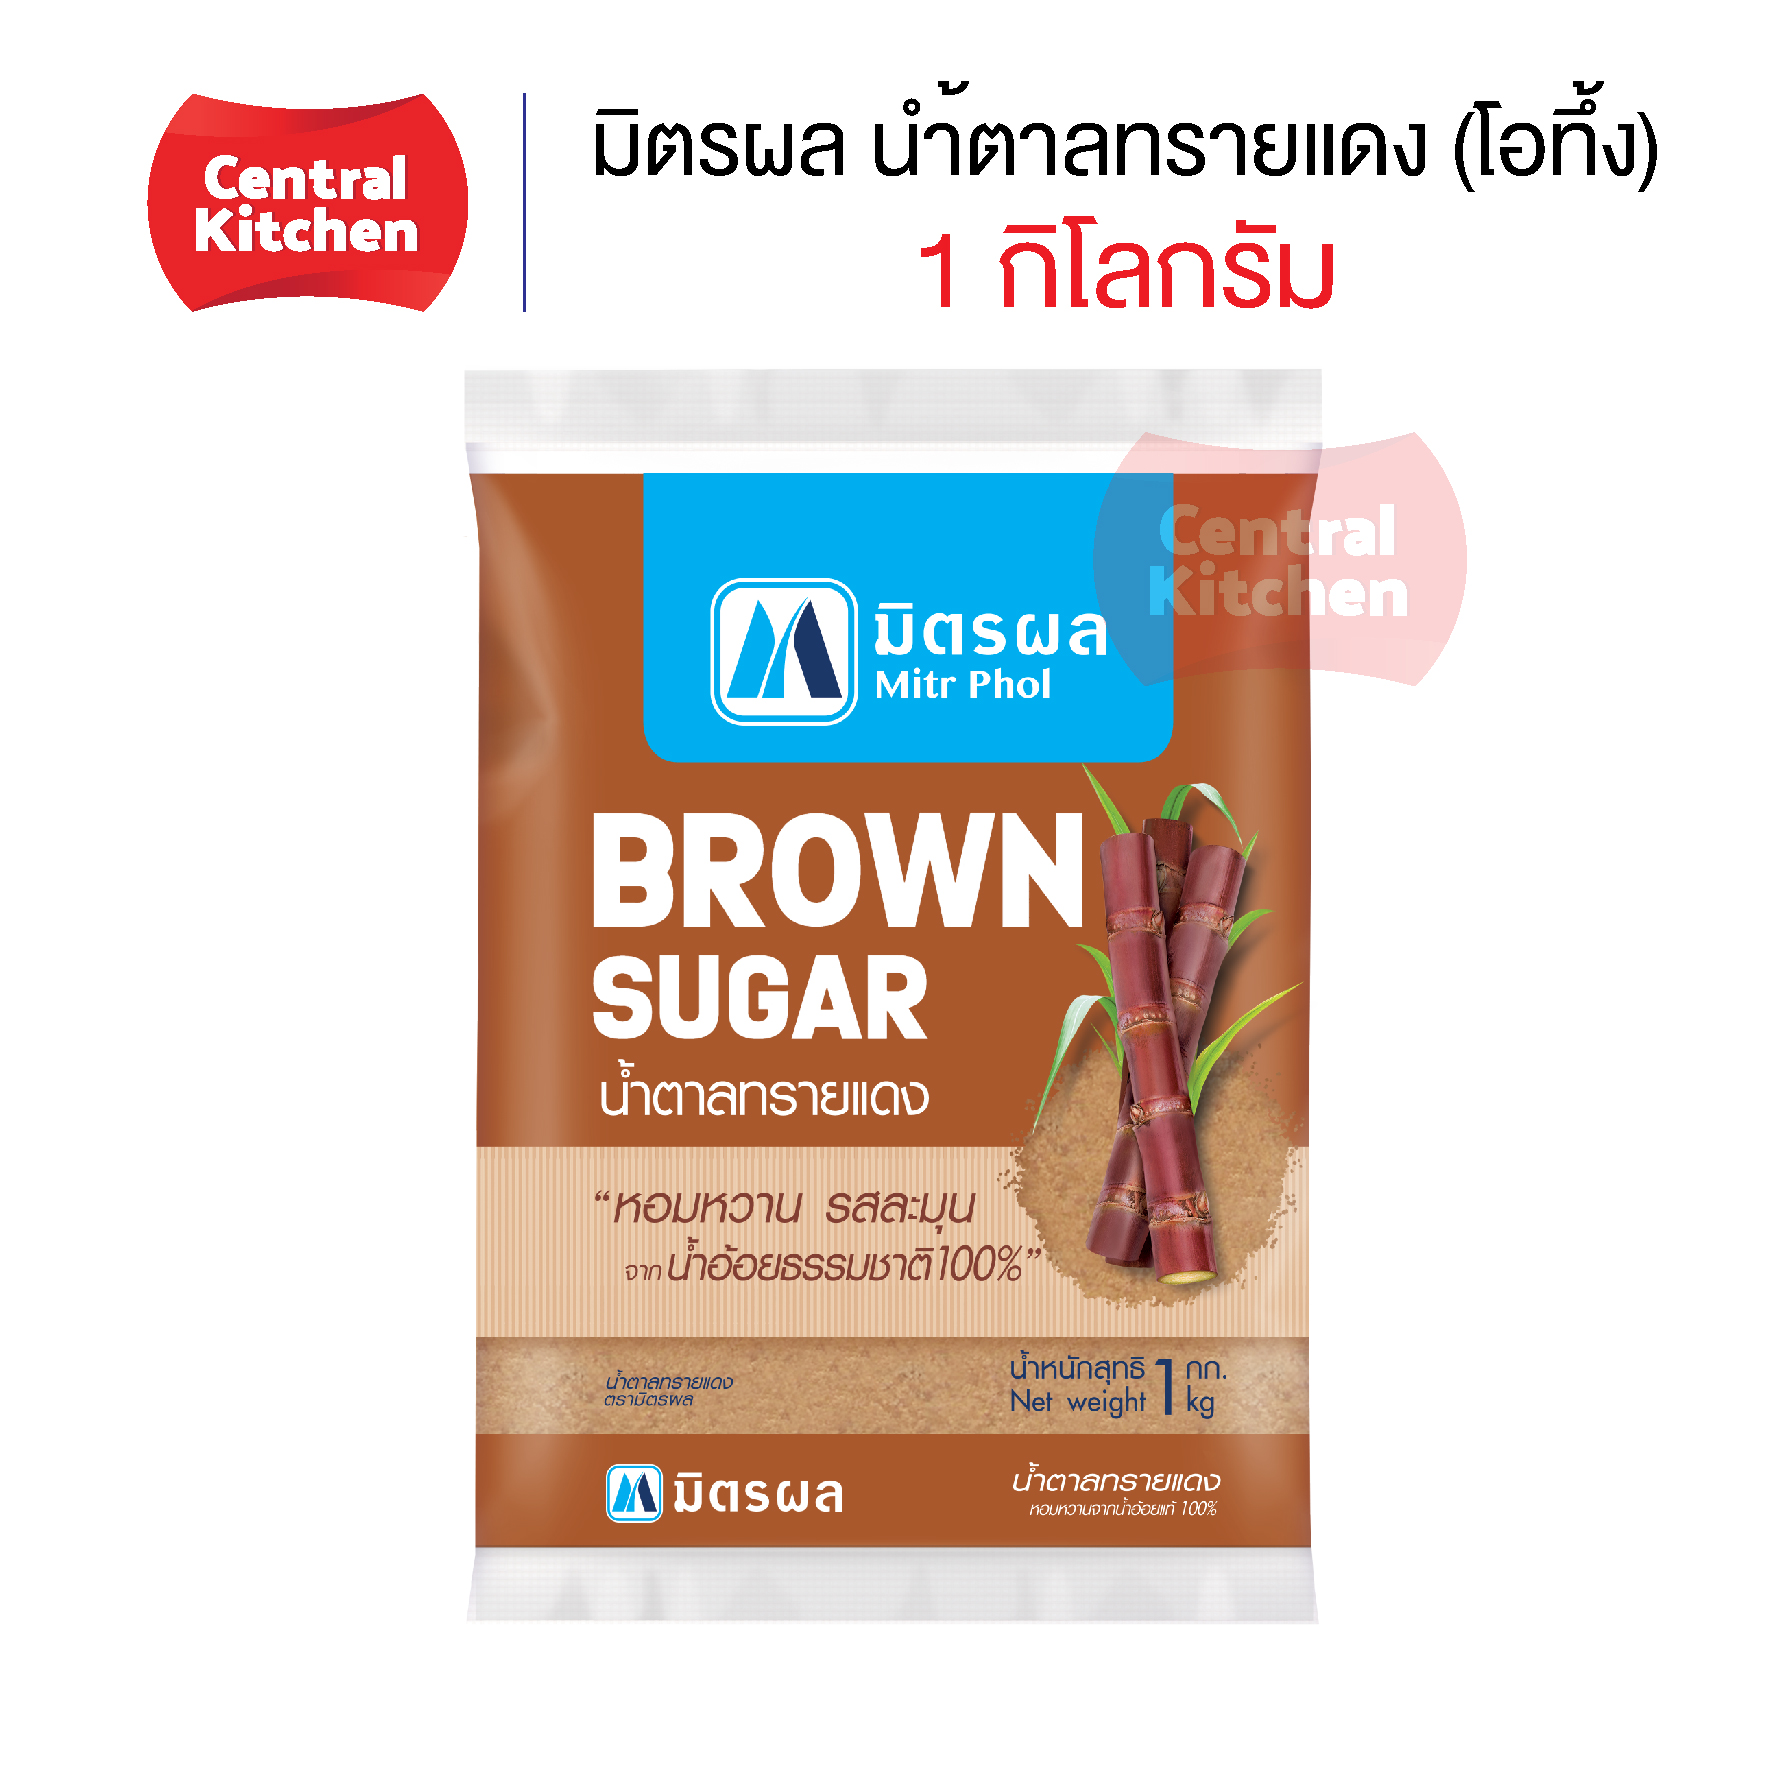 มิตรผล น้ำตาลทรายแดง (โอทึ้ง) Brown Sugar ขนาด 1 กิโลกรัม